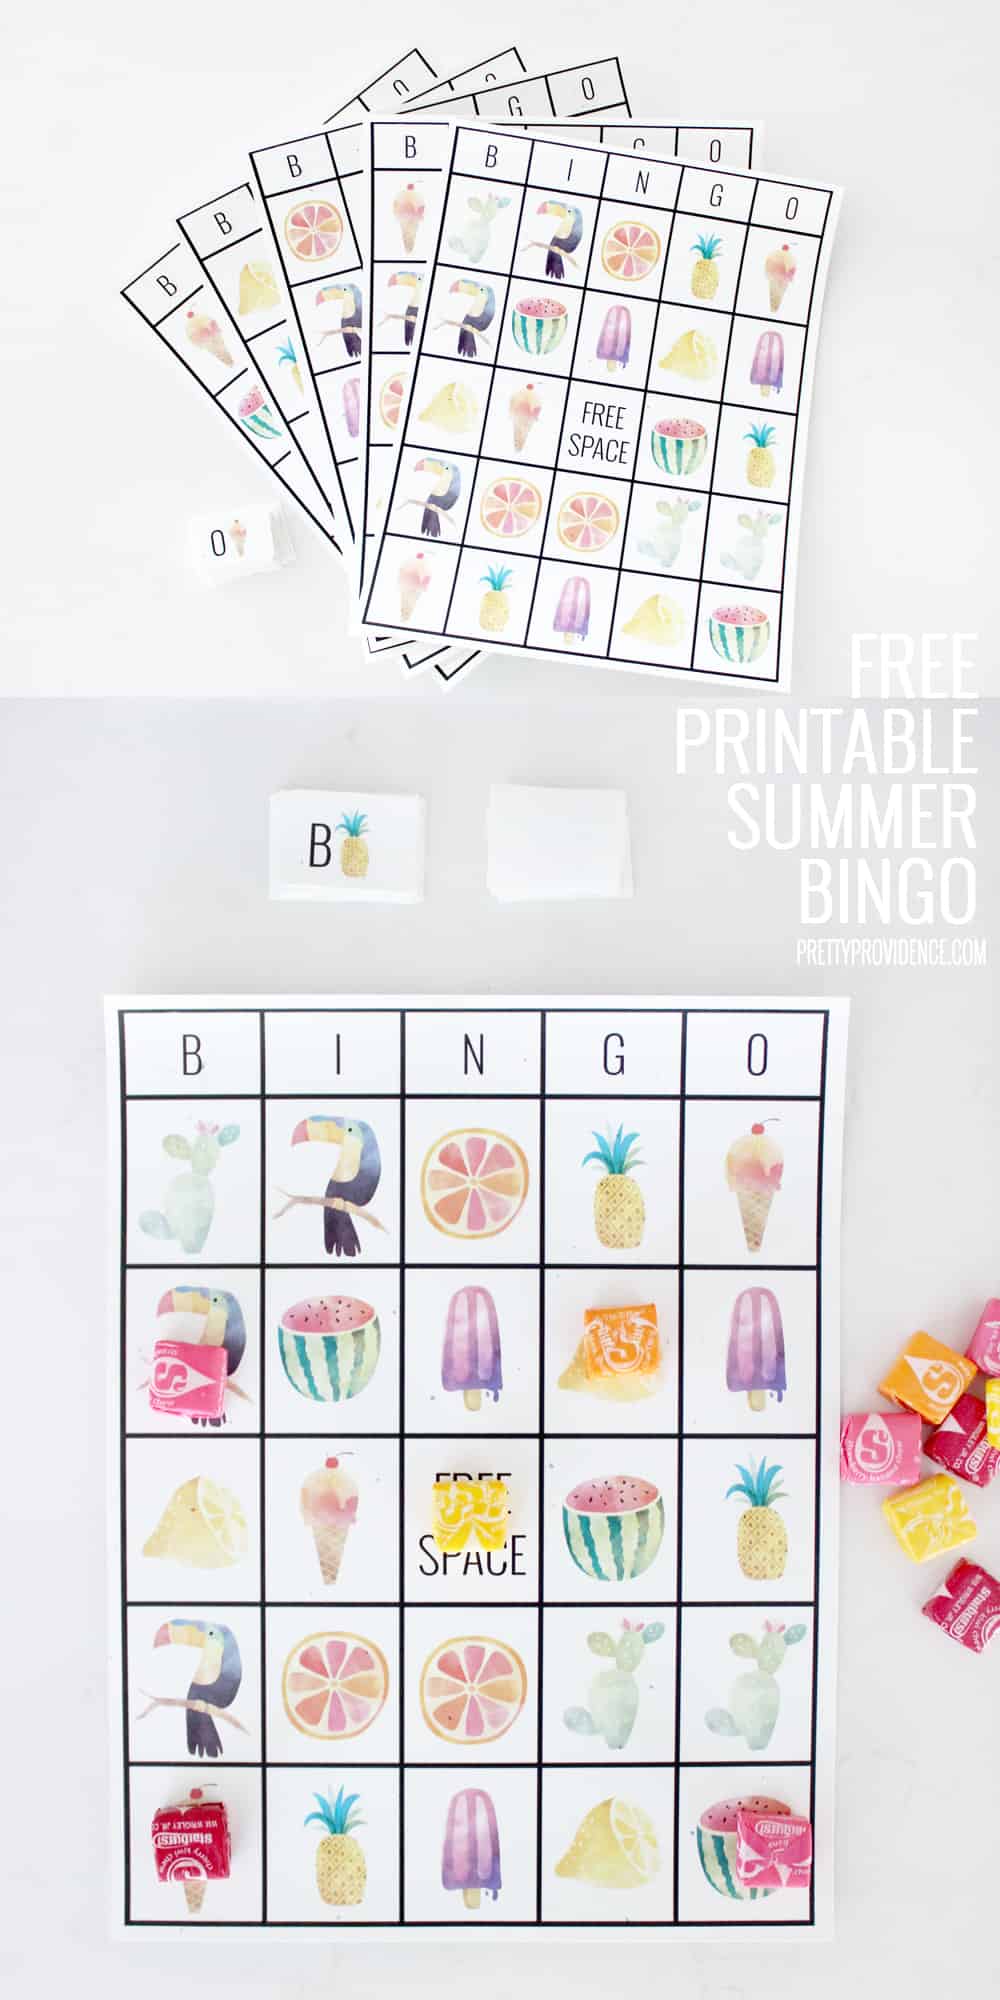 Summer bingo free printable worksheets